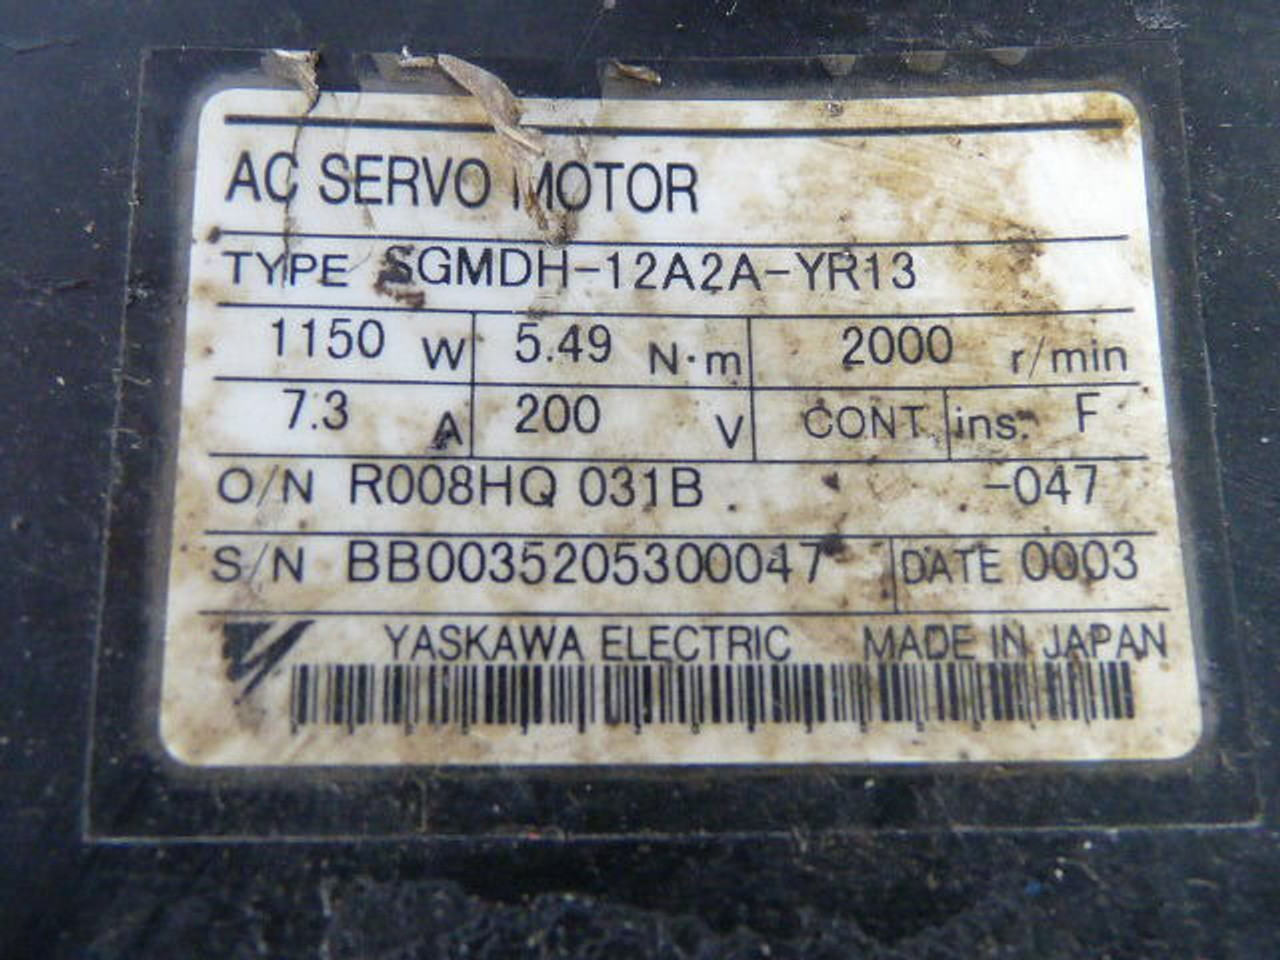 Yaskawa SGMDH-12A2A-YR13 AC Servo Motor 2000rpm 200V 5.49Nm 7.3A 1150W USED